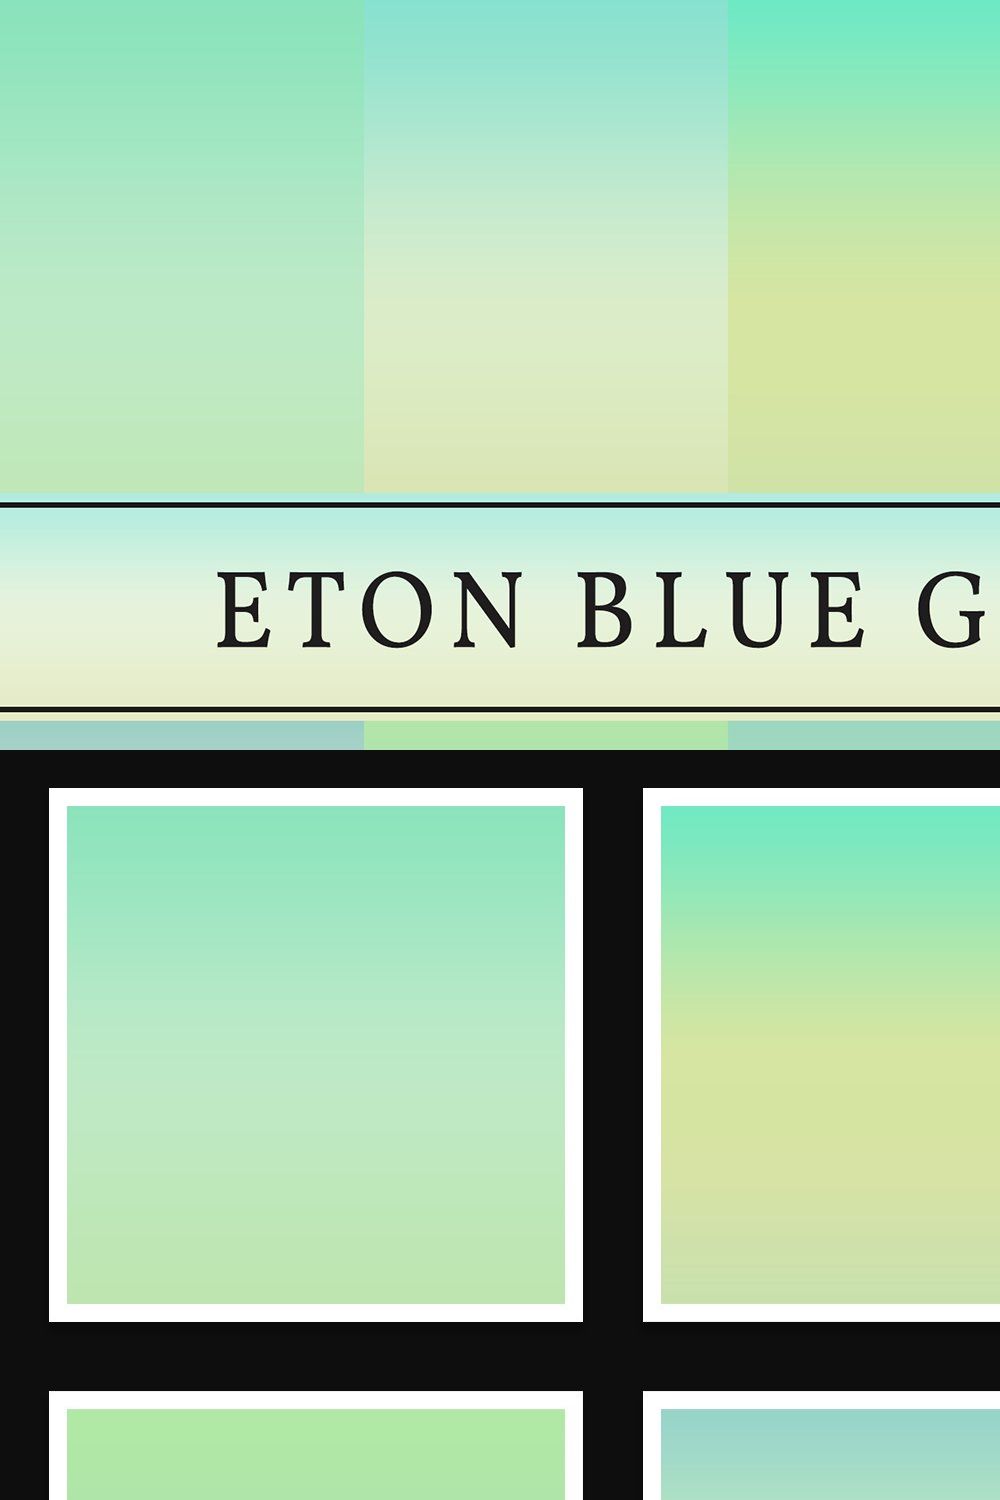 Eton Blue Gradients pinterest preview image.